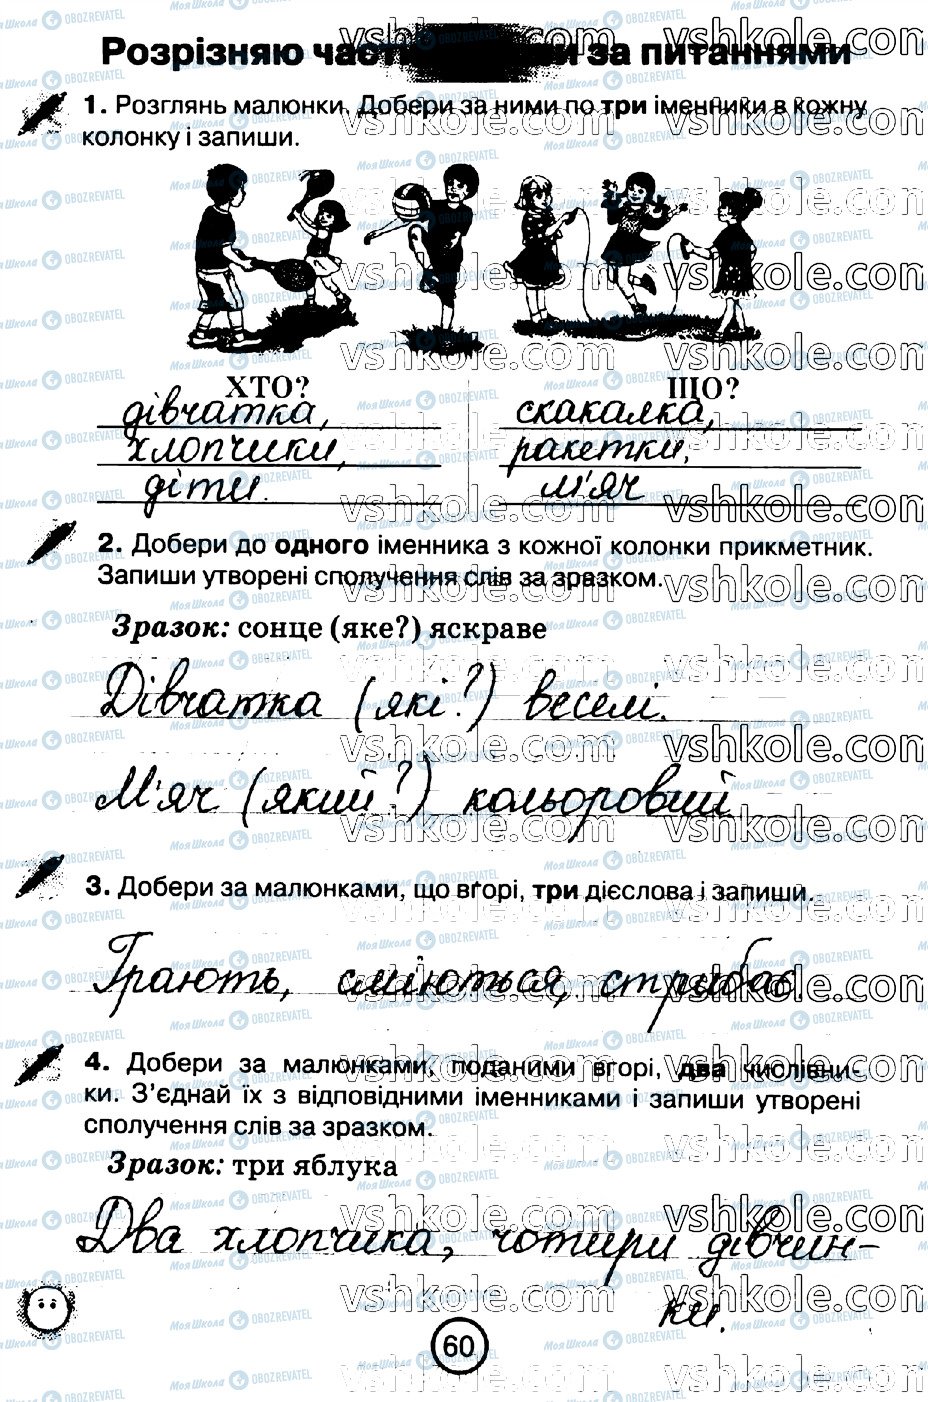 ГДЗ Укр мова 2 класс страница стр60